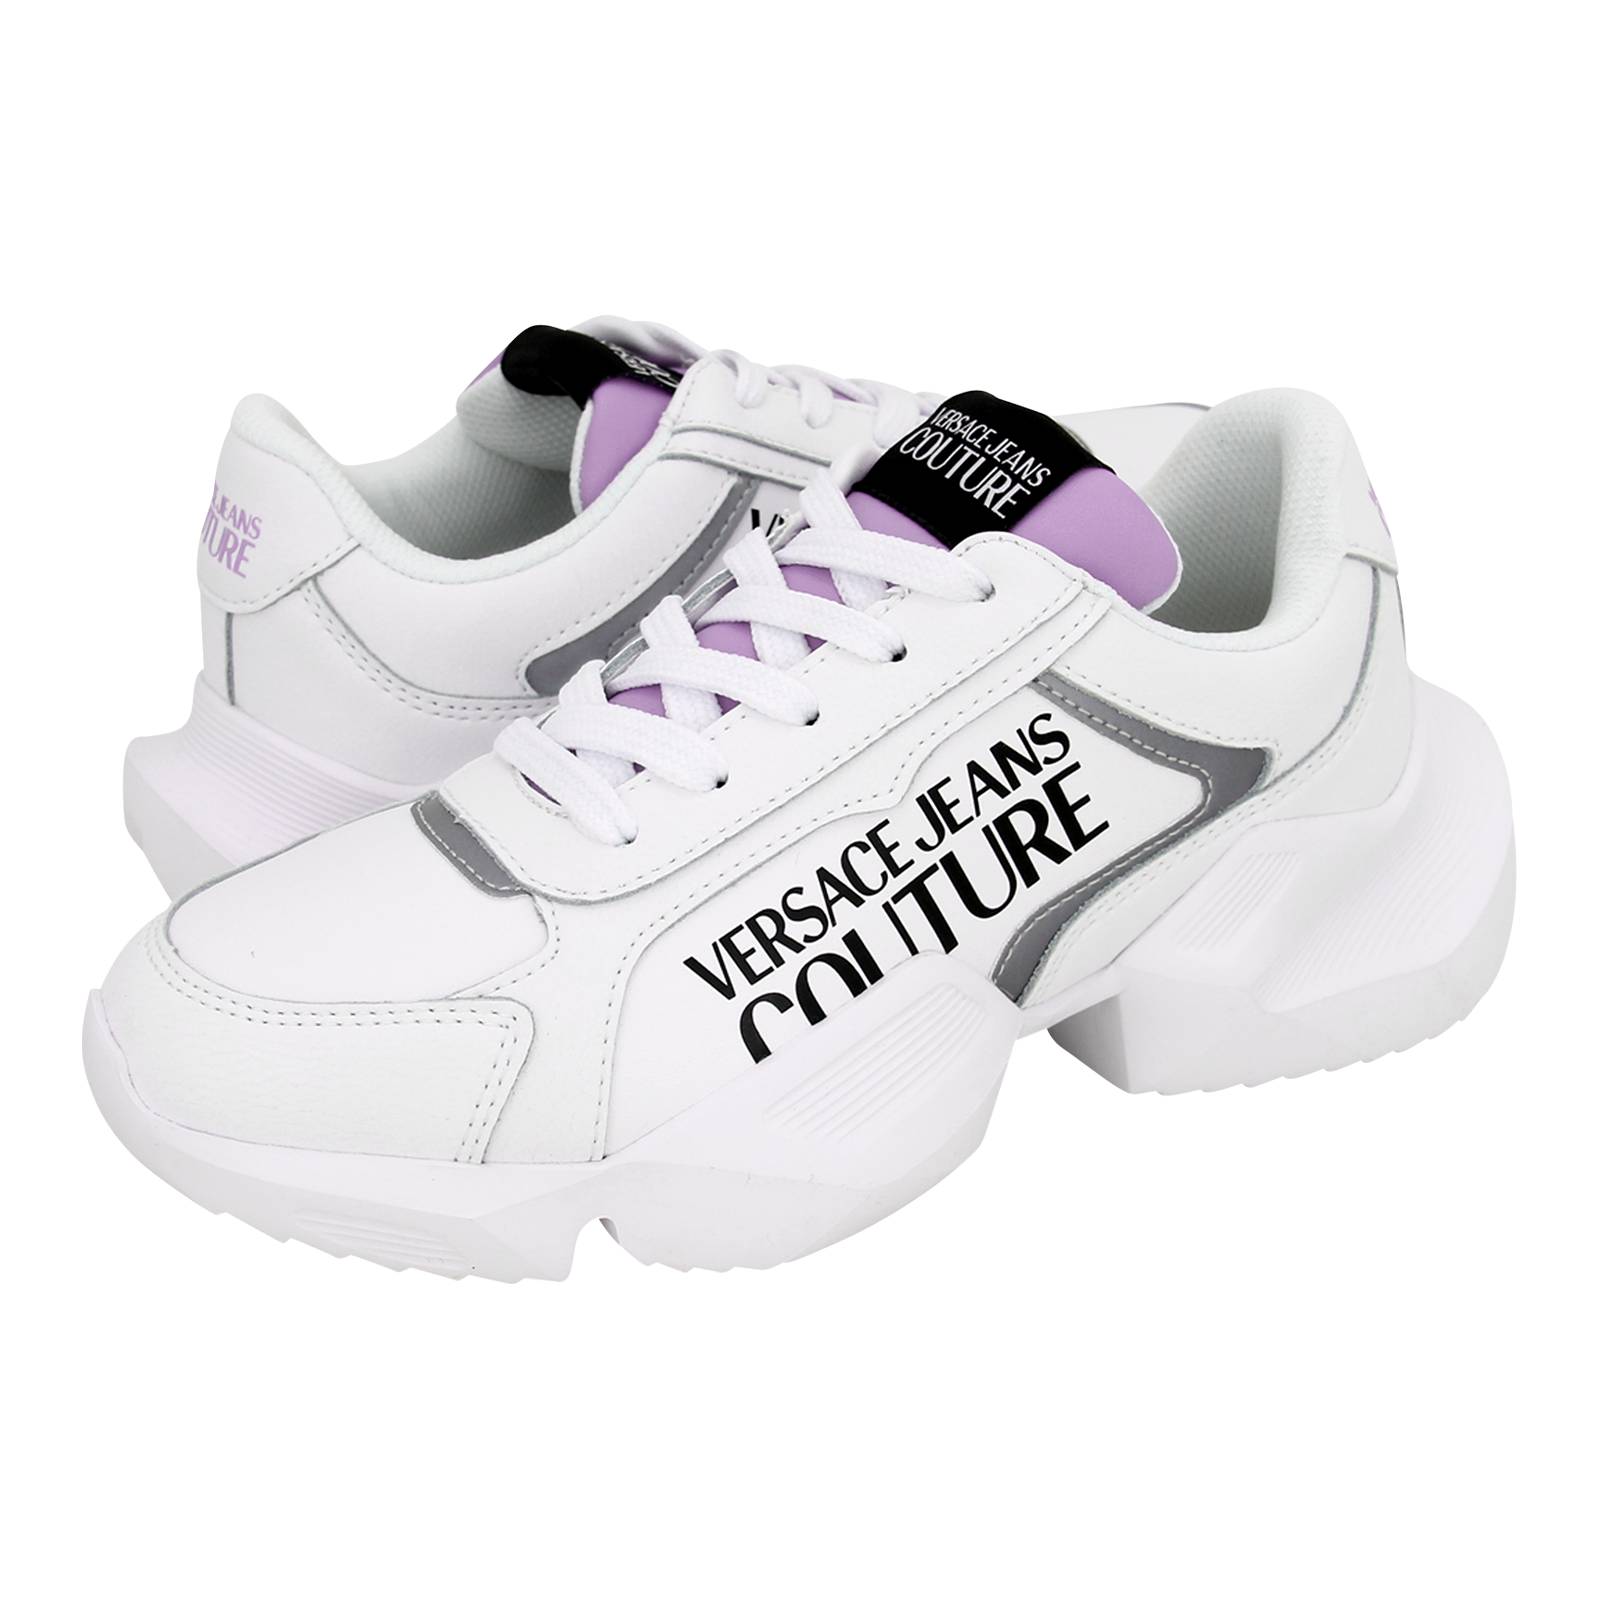 versace purple shoes